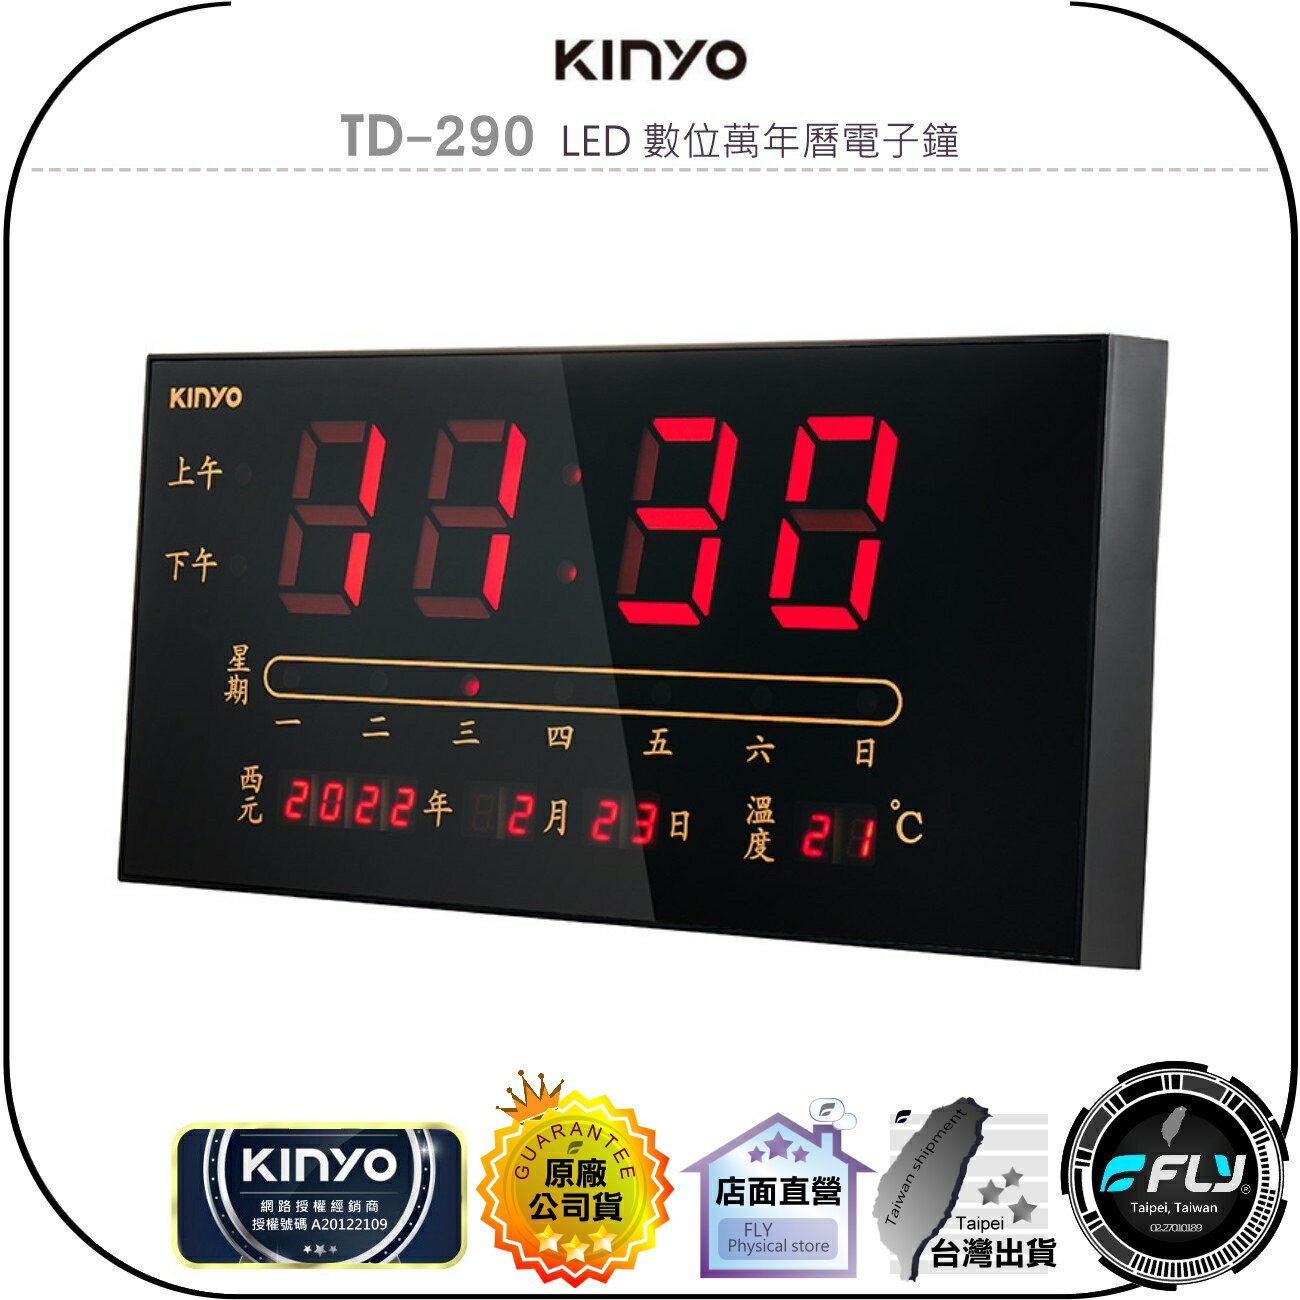 【飛翔商城】KINYO 耐嘉 TD-290 LED 數位萬年曆電子鐘◉公司貨◉壁掛設計◉溫度偵測◉年月日星期